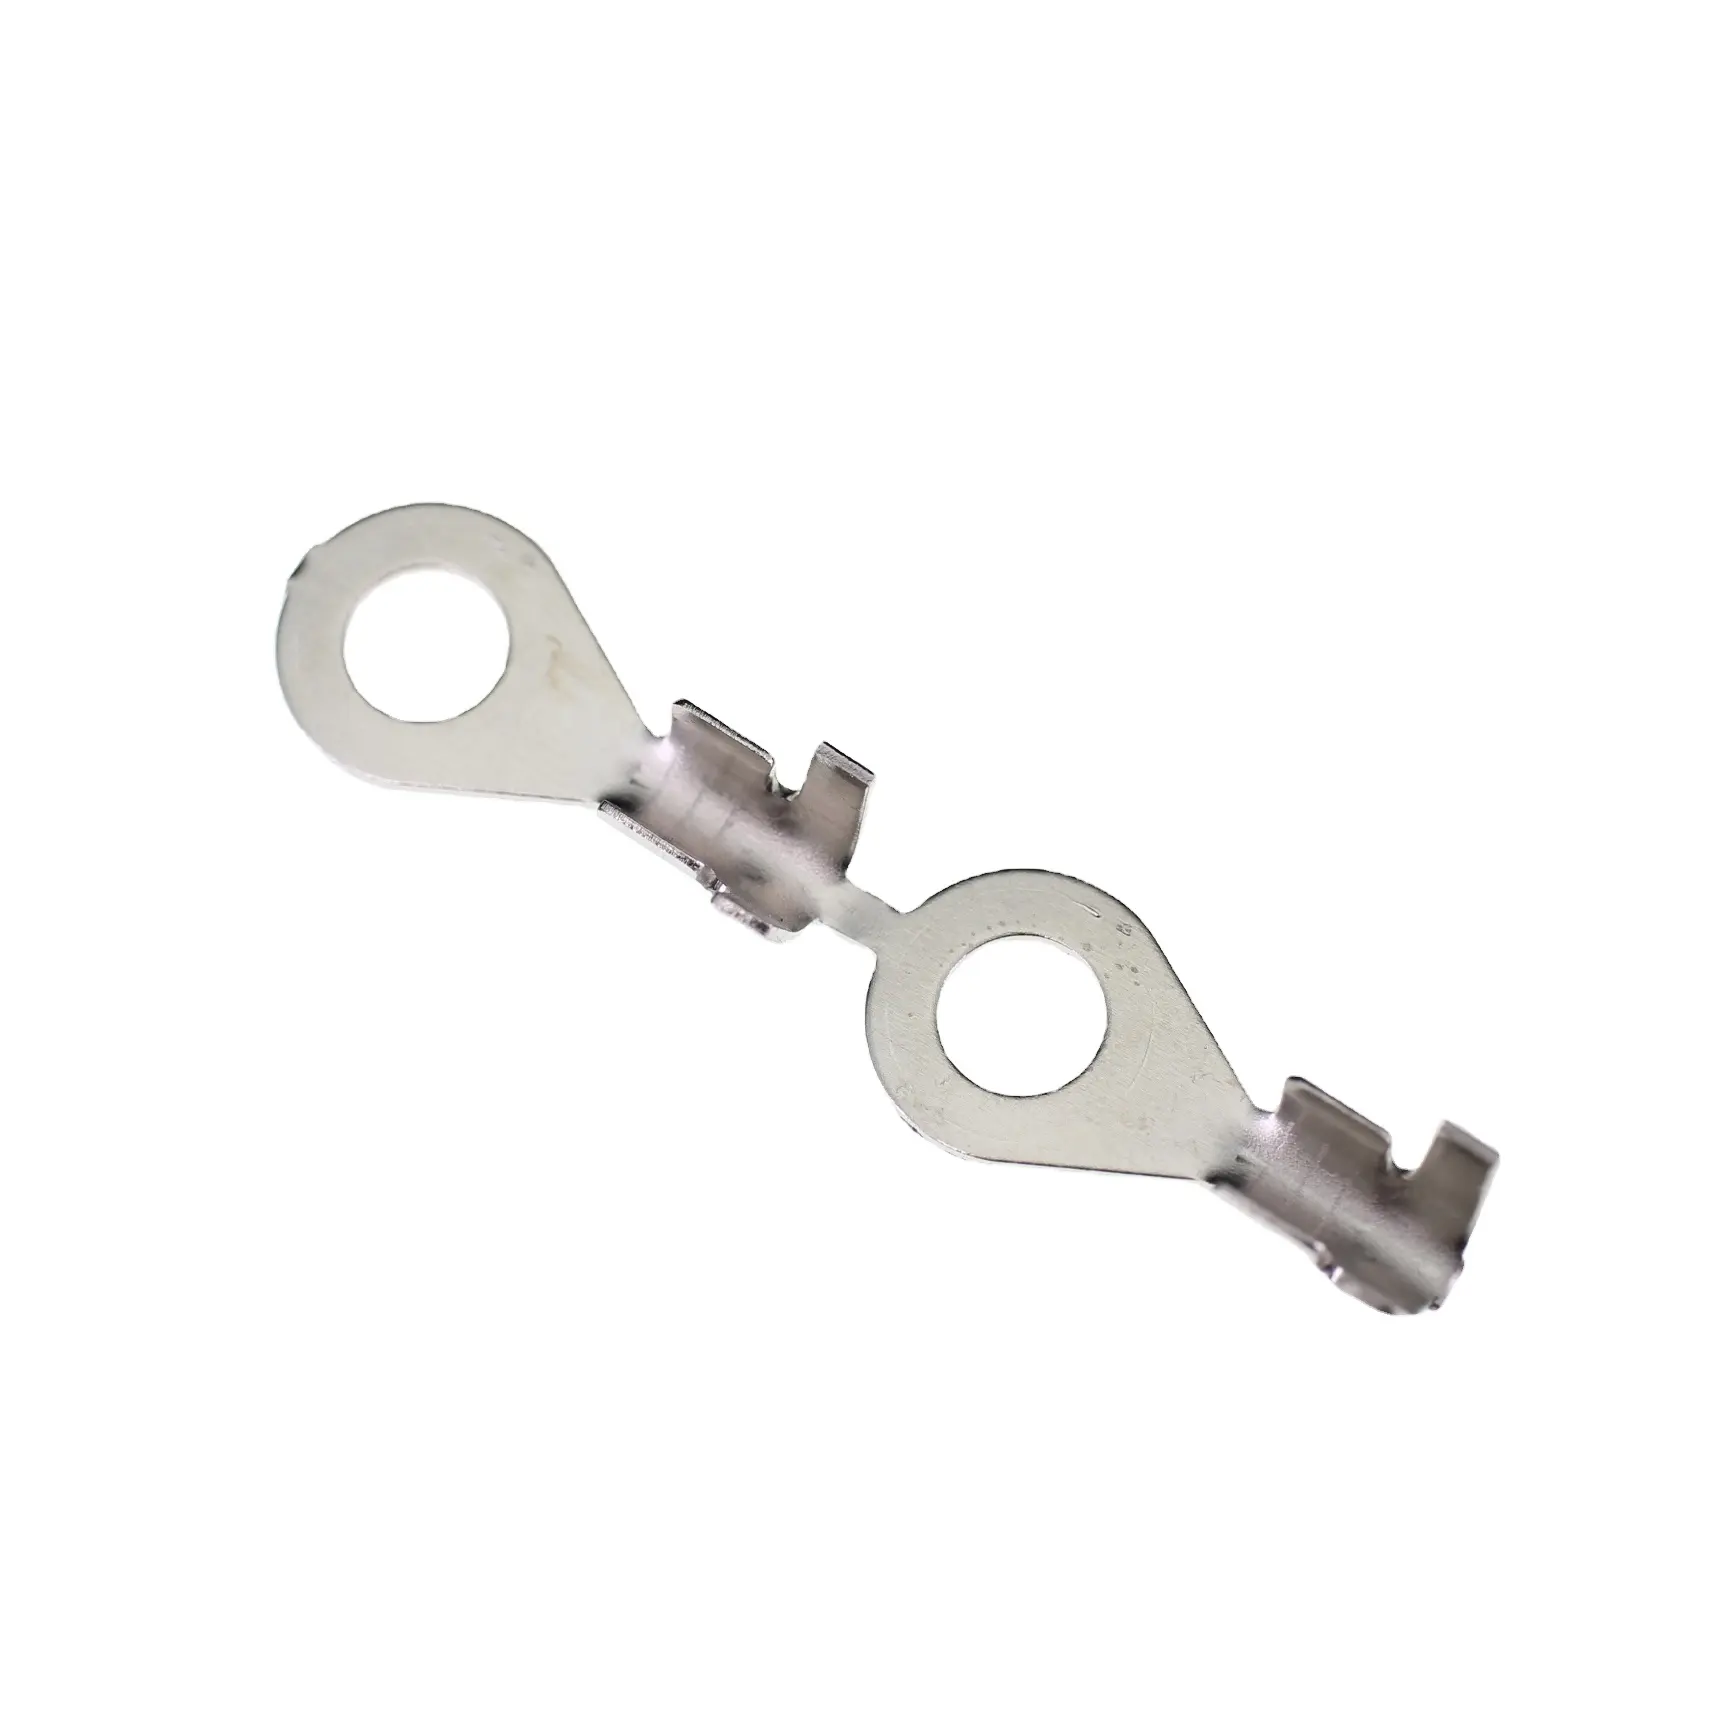 裸のリングタイプの品揃えケーブル圧着非絶縁バットフォーク端子コネクタ